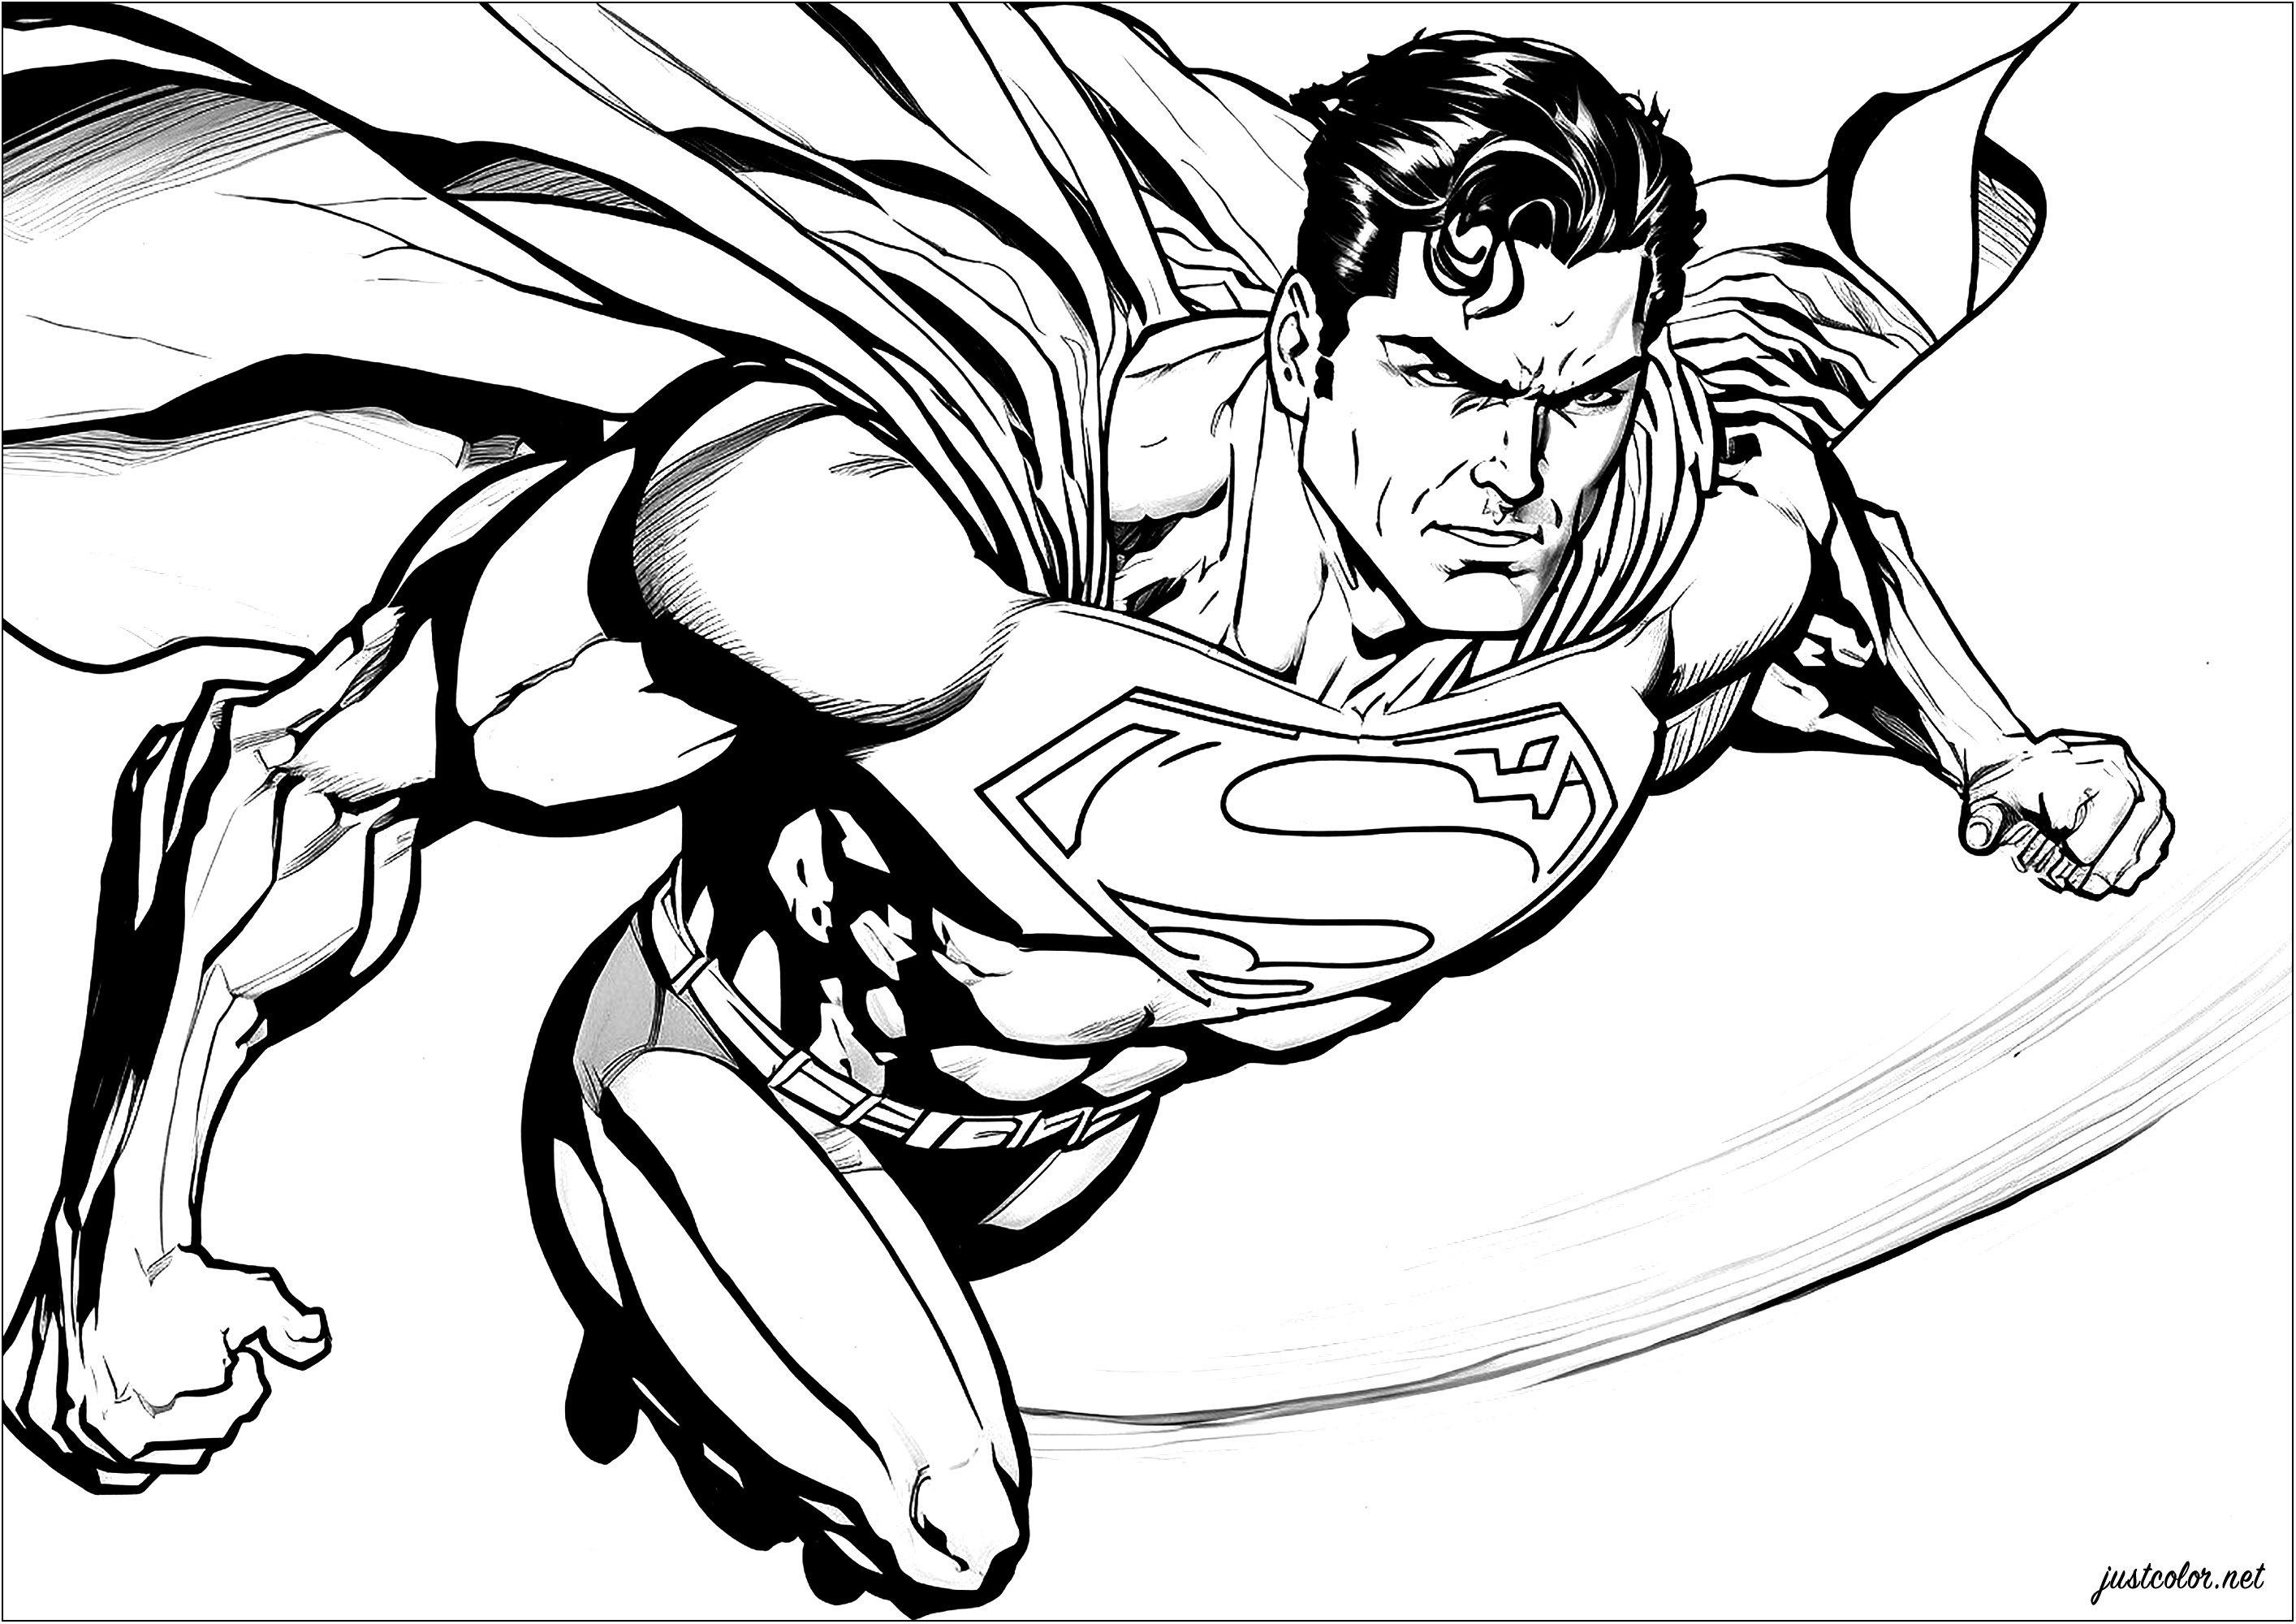 Super-Homem em pleno voo, com a capa ao vento. Esta página para colorir representa o Super-Homem a voar. Vemos o super-herói, vestido com o seu fato (que em breve será vermelho e azul, graças a si), a voar no céu, com uma expressão de determinação no rosto.